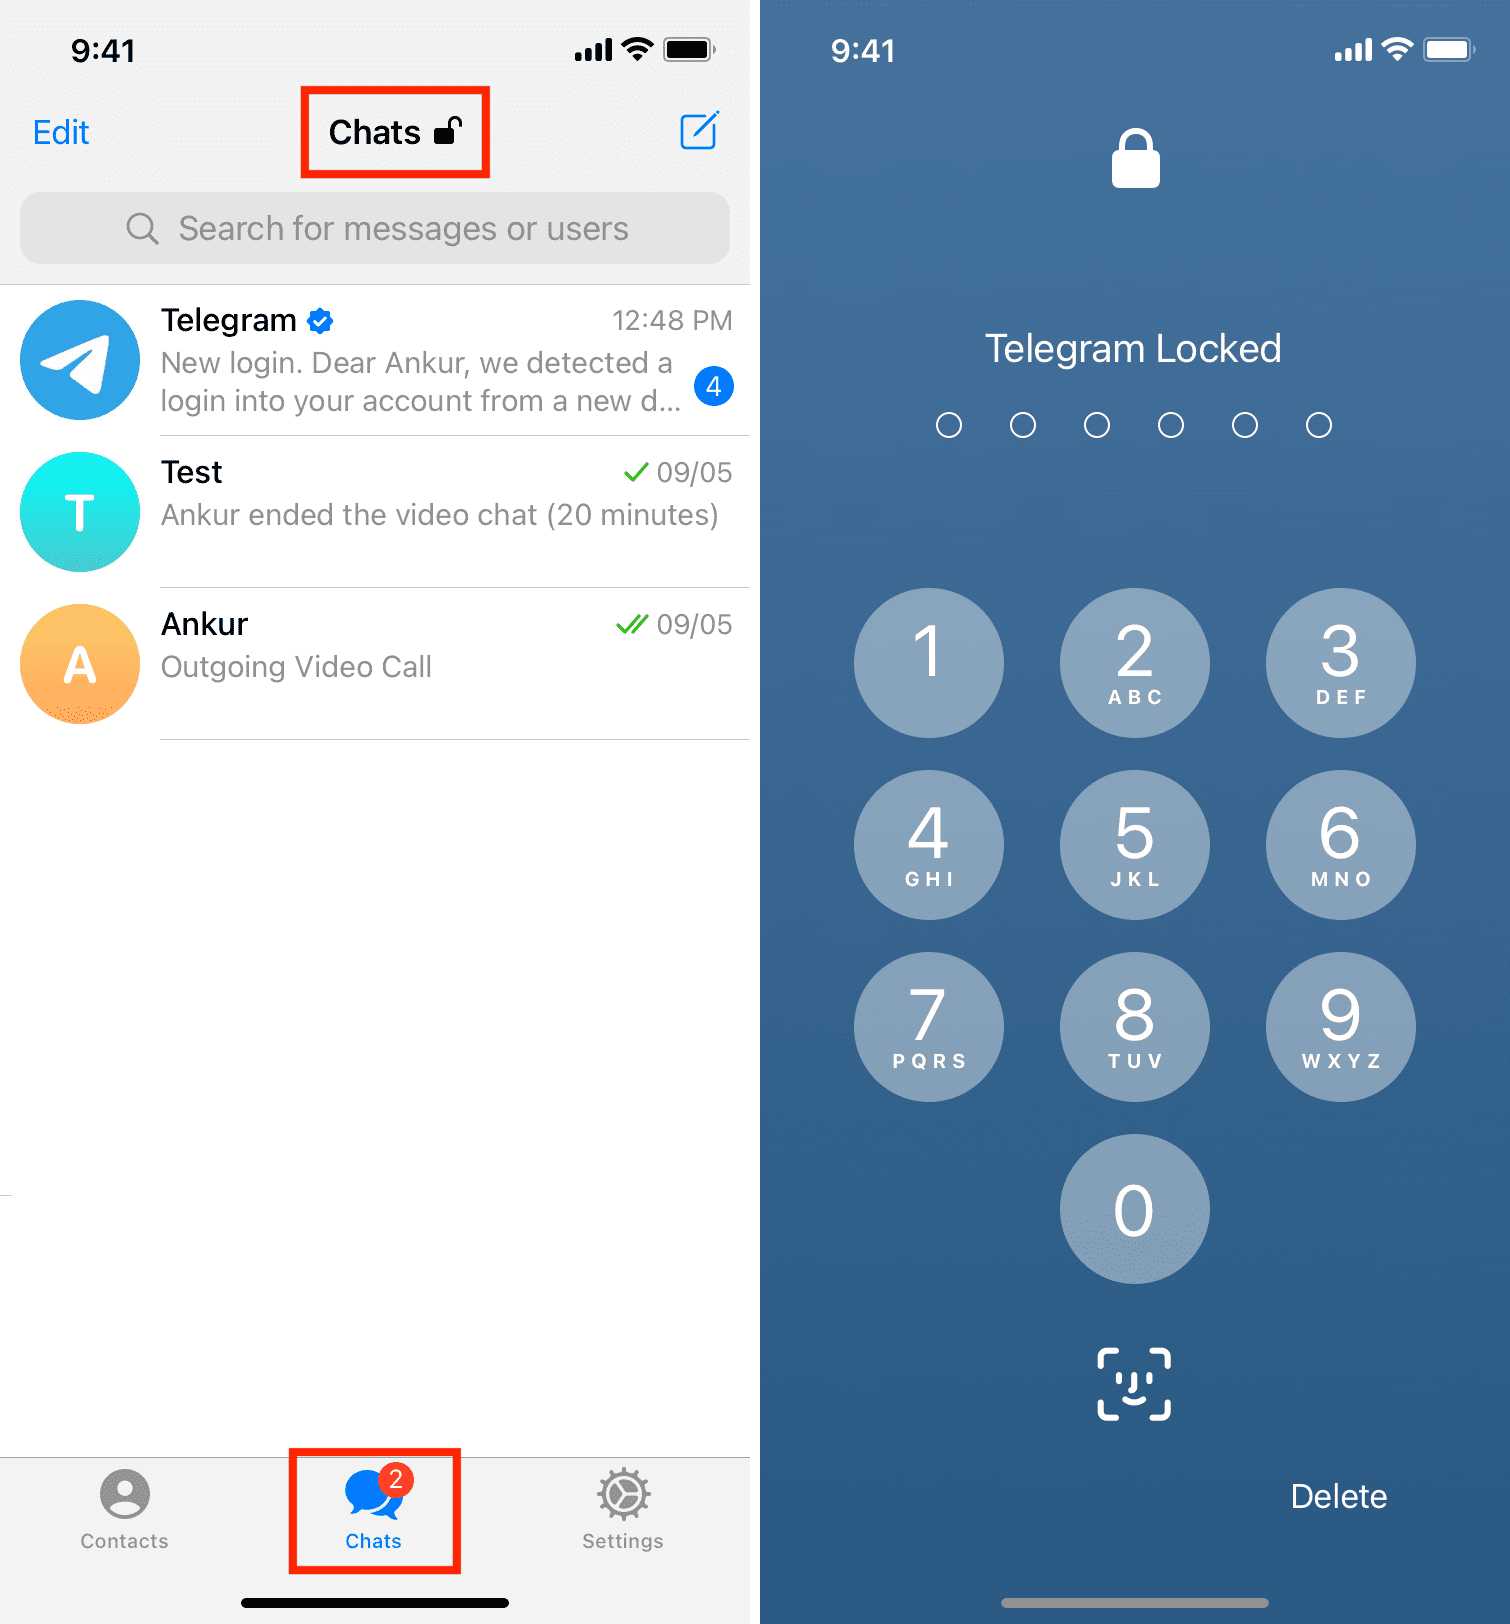 Bloquee la aplicación Telegram cuando lo desee tocando el botón de bloqueo